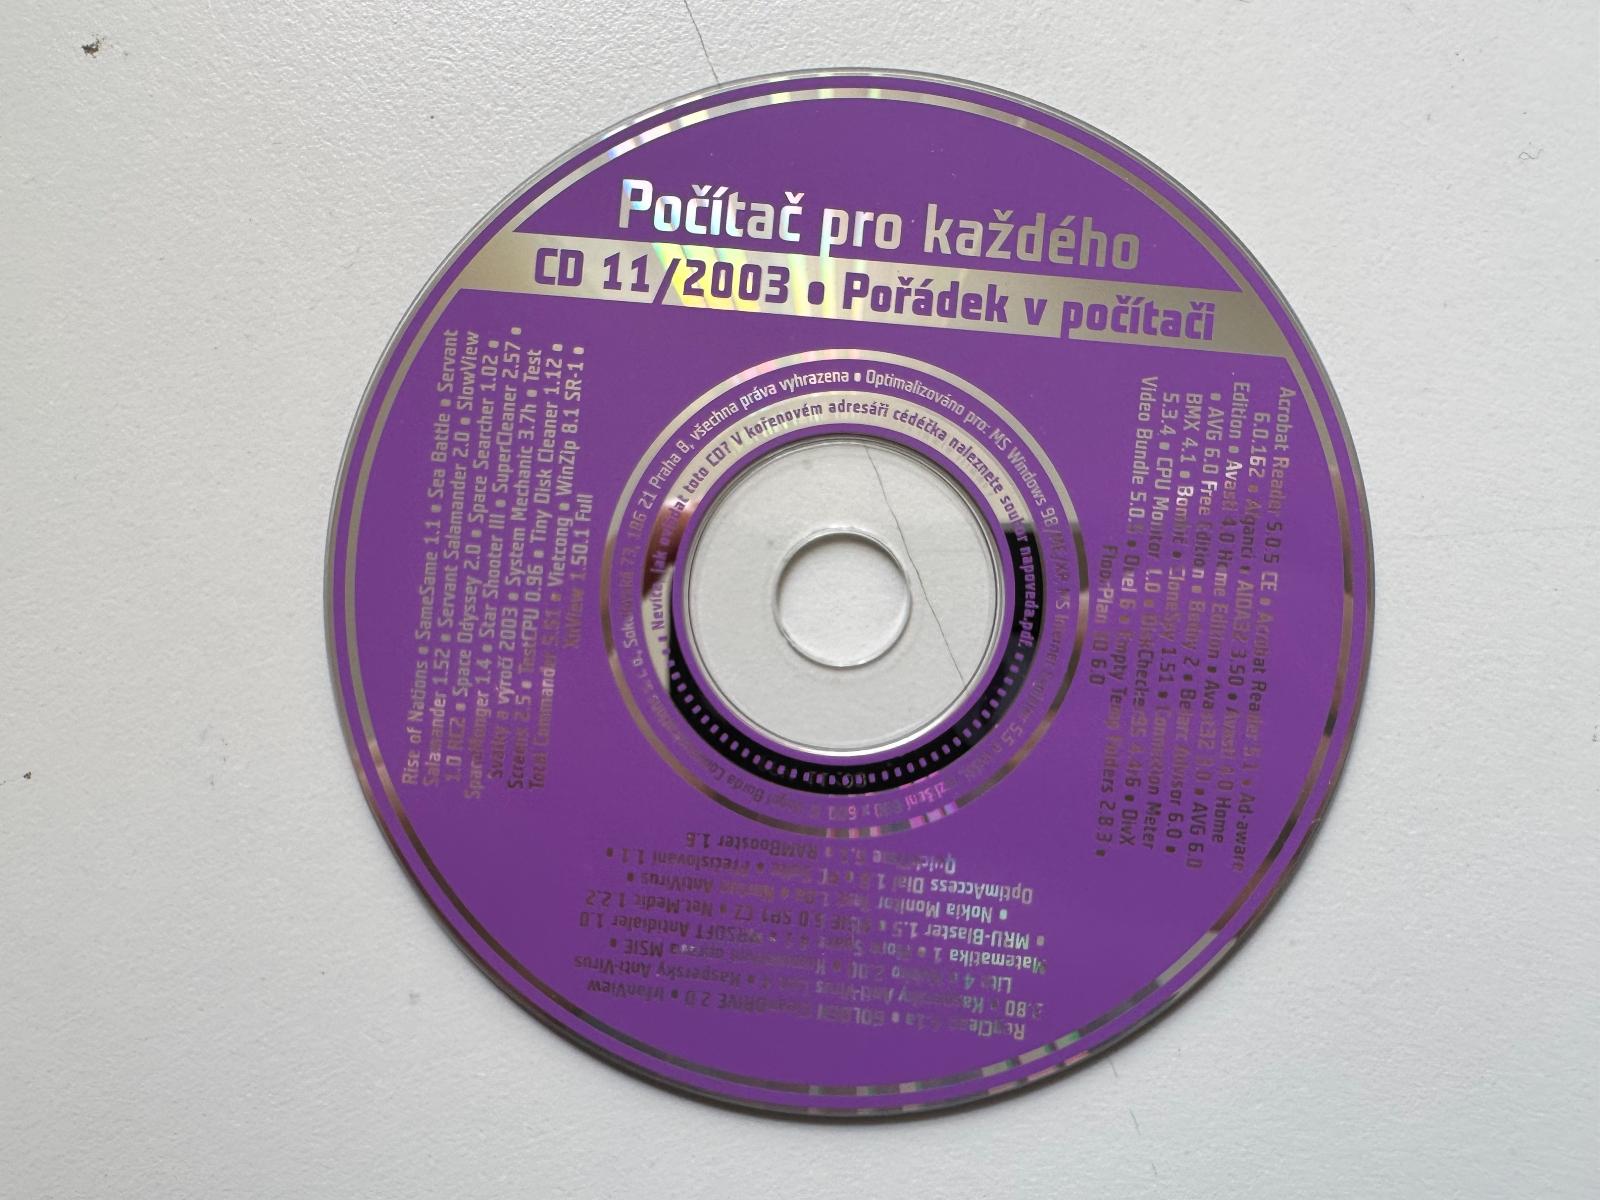 PC CD PPK Počítač pro každého 11/2003 Pořádek v PC - Počítače a hry